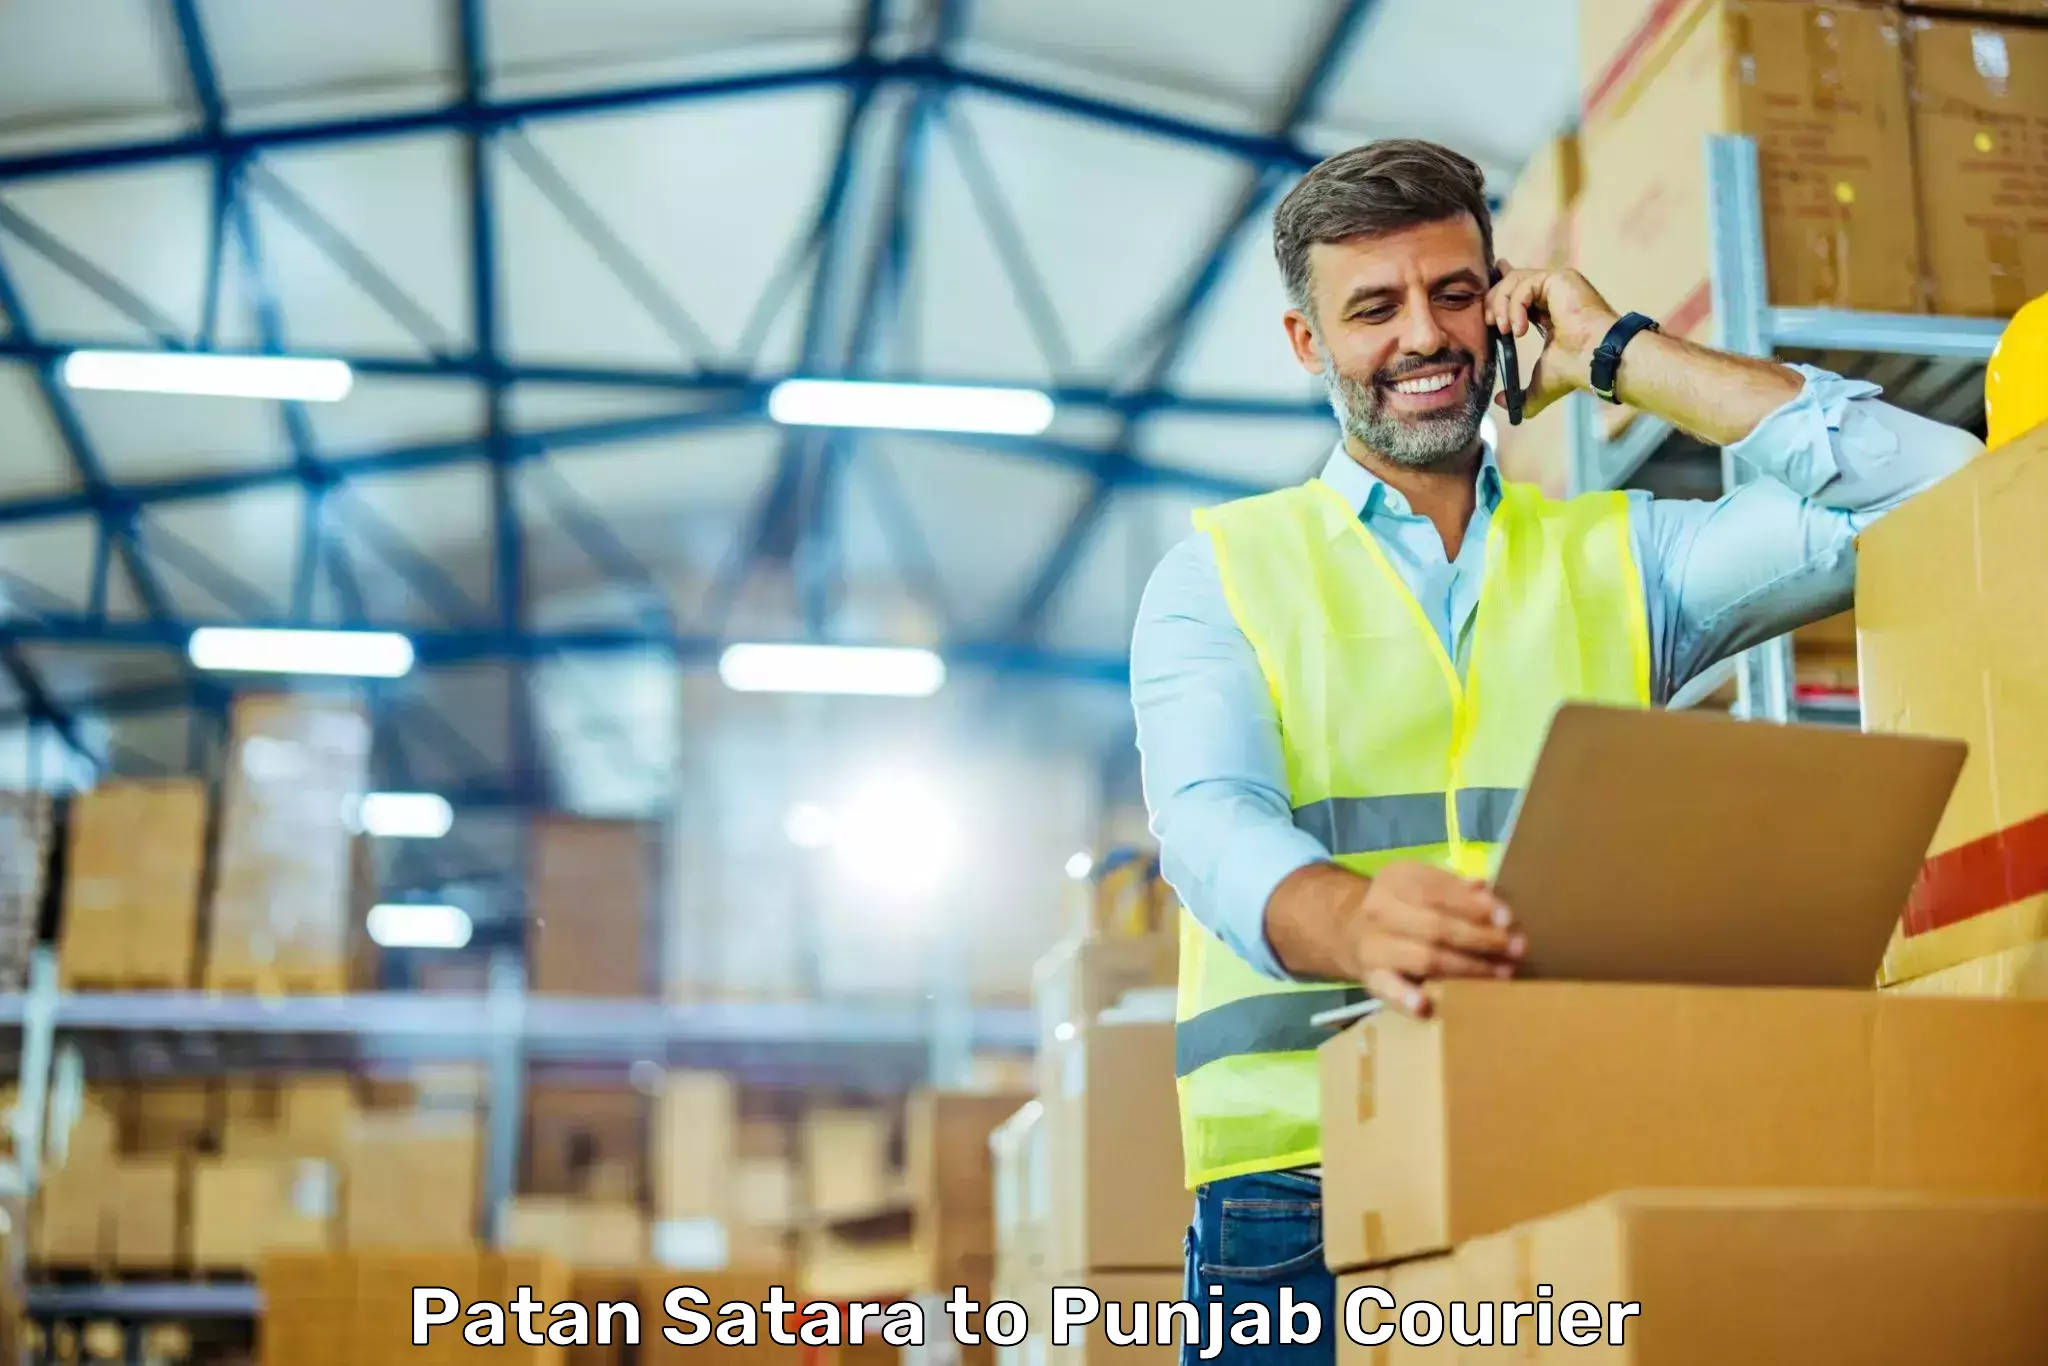 Punctual parcel services Patan Satara to Punjab